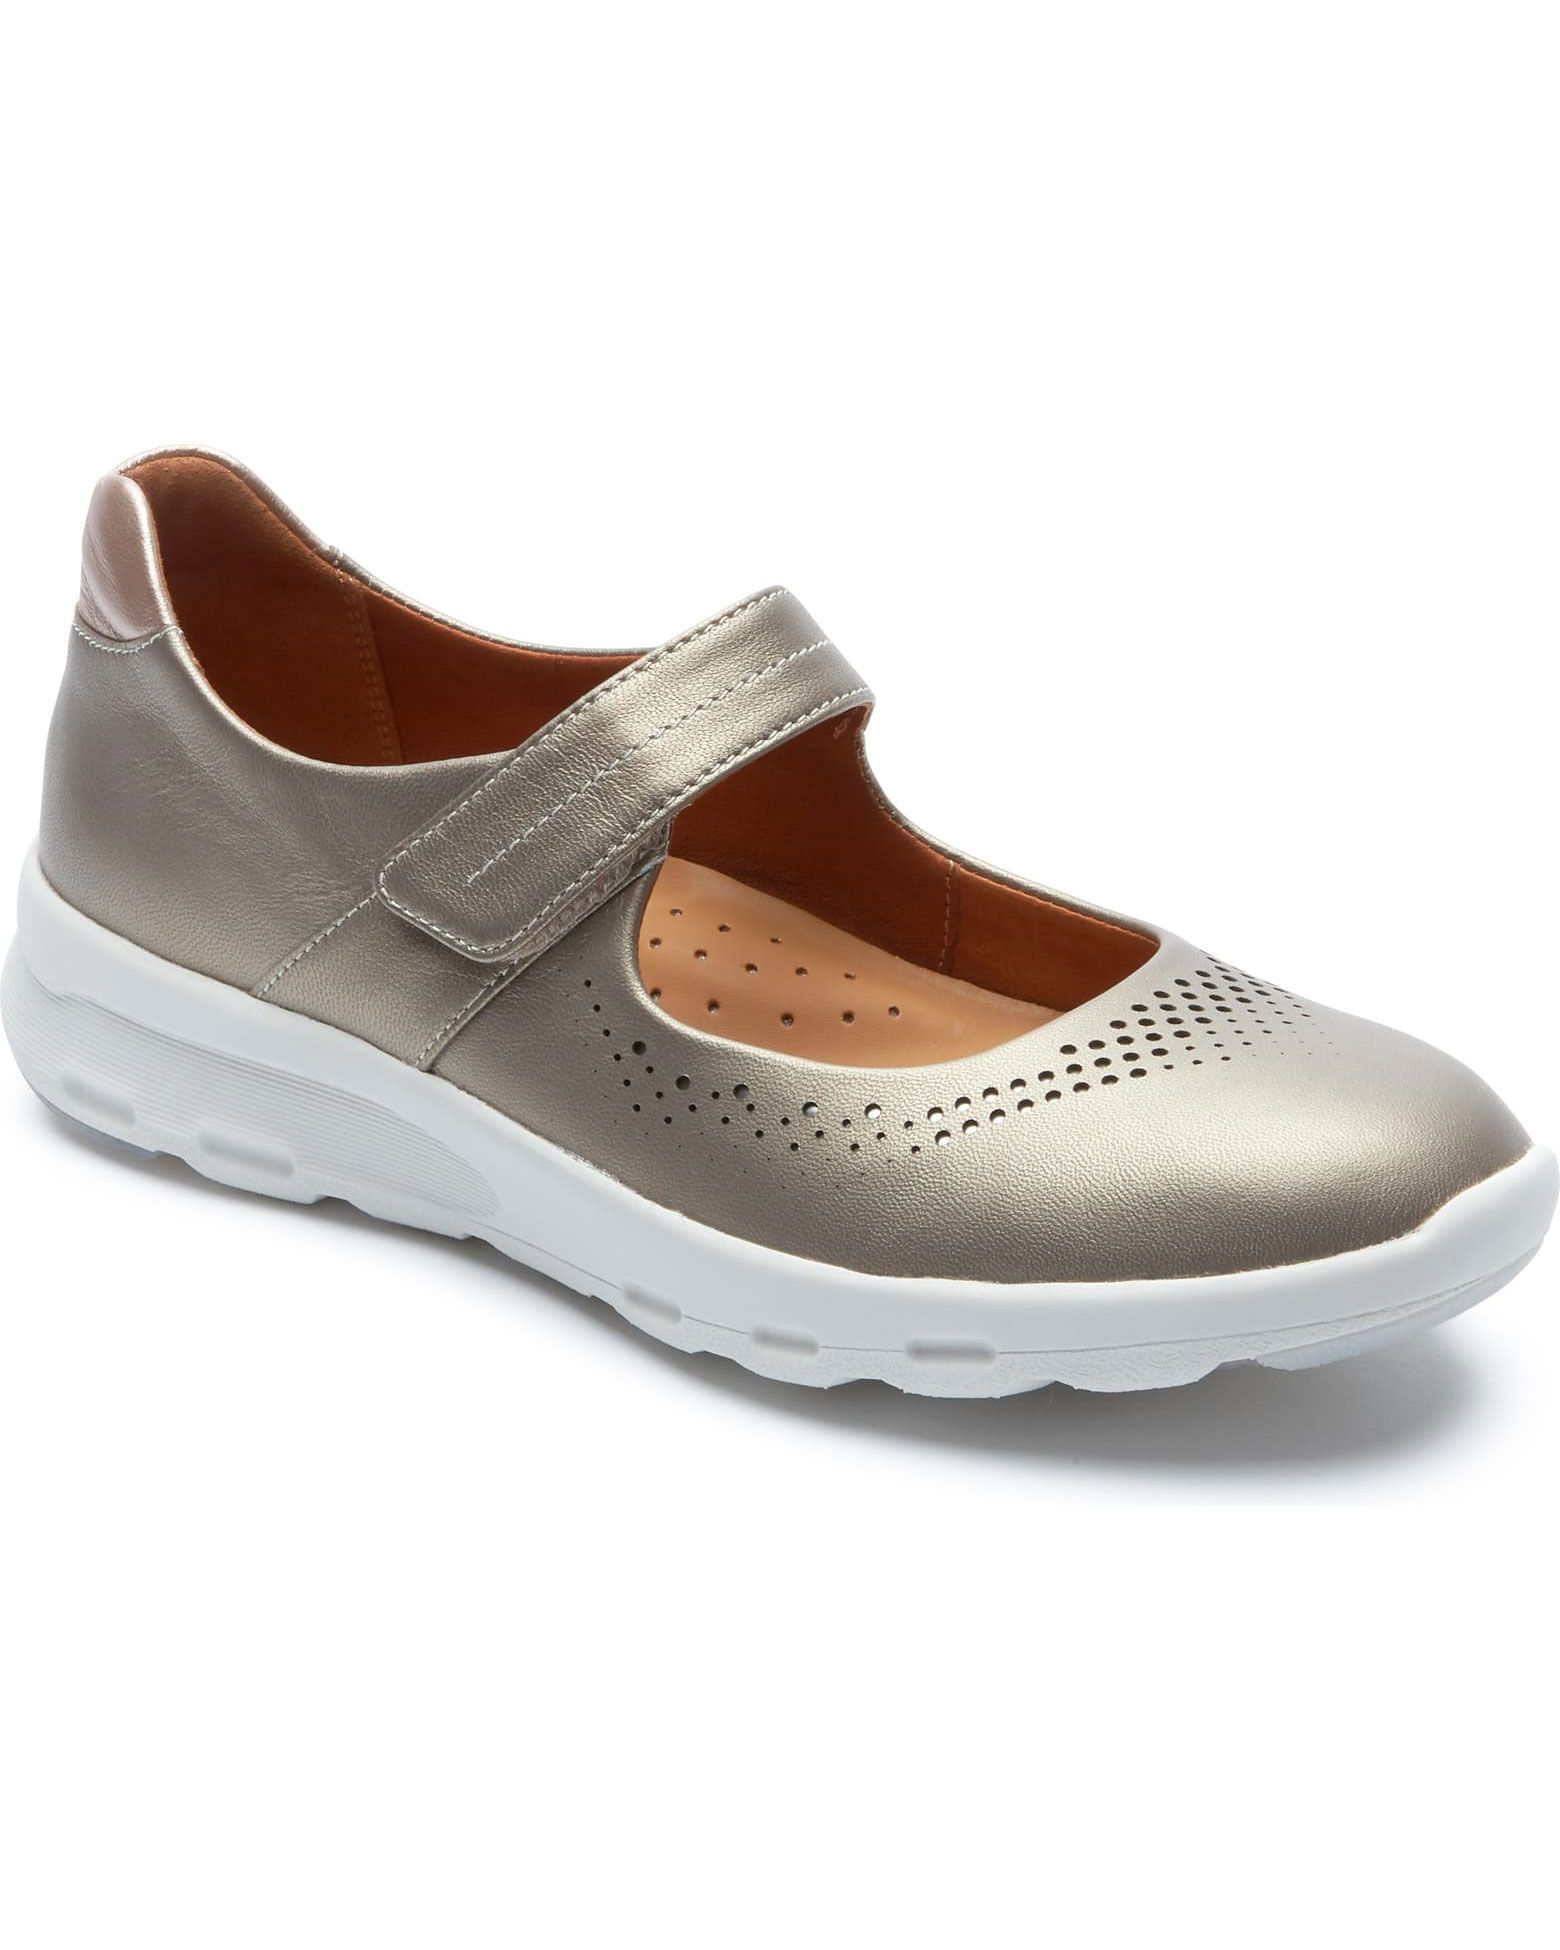 Pantof de mers pe jos Maryport Rockport: cele mai bune pantofi de mers pentru femei